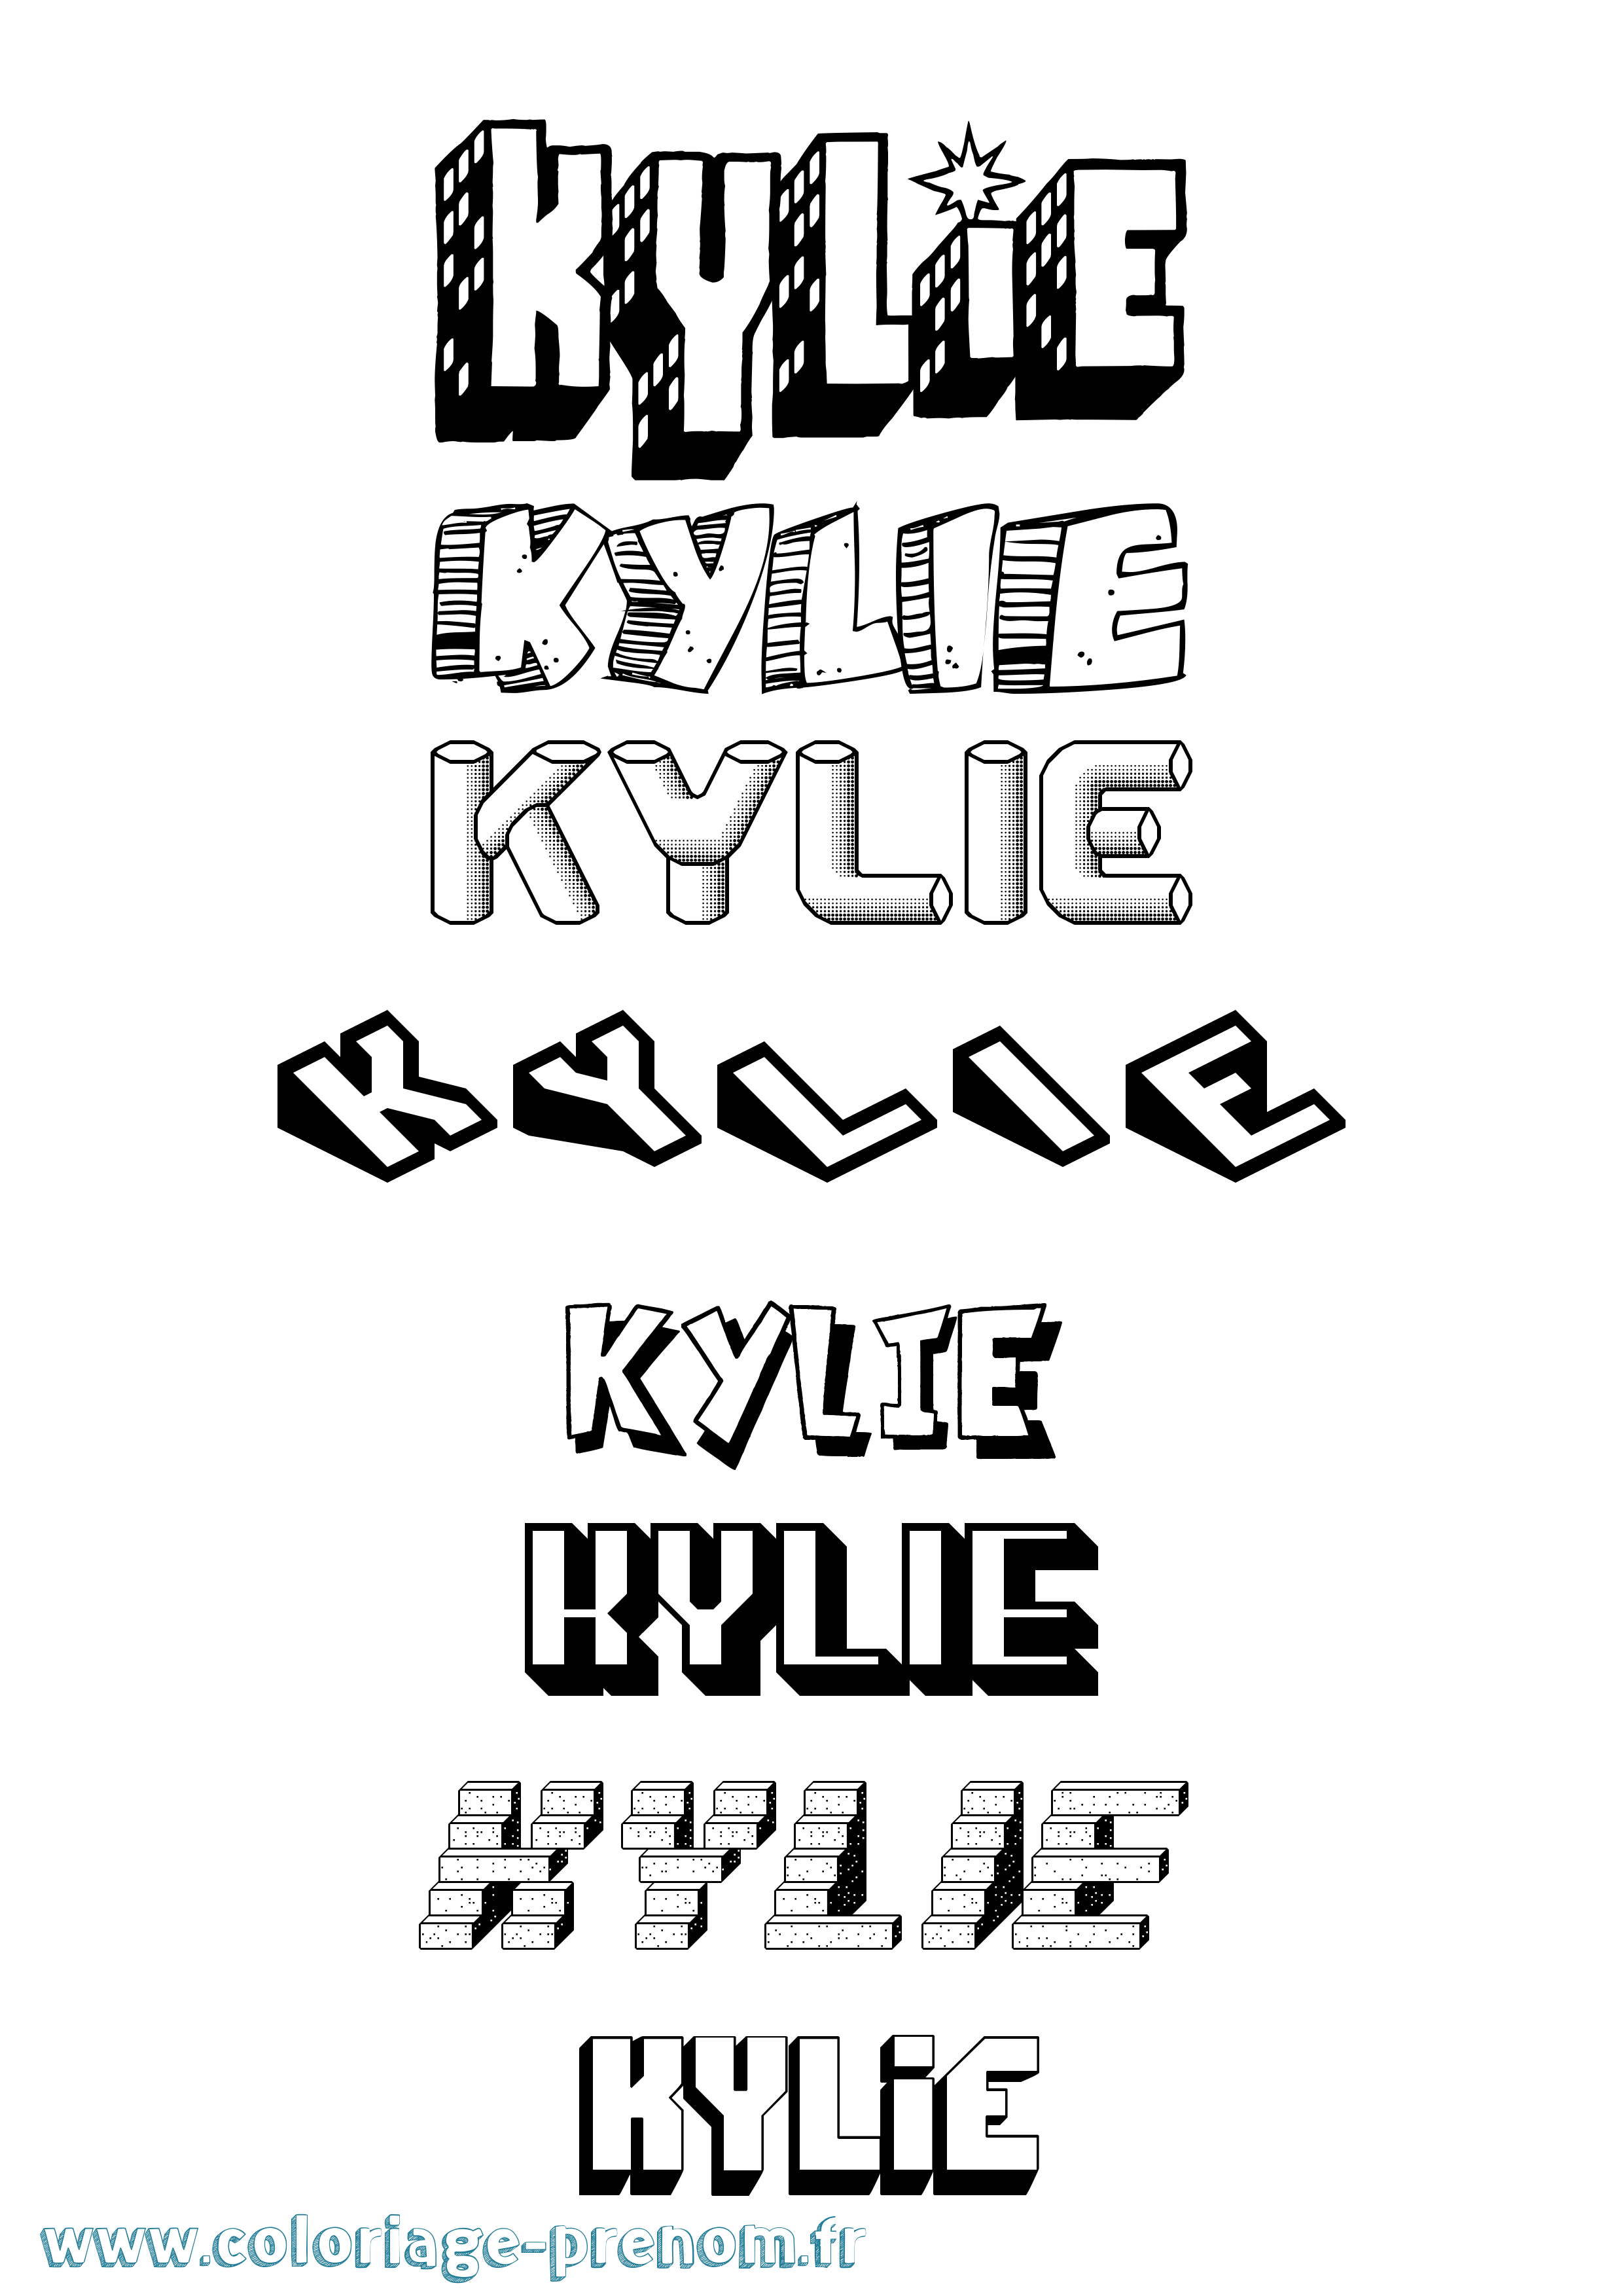 Coloriage prénom Kylie Effet 3D